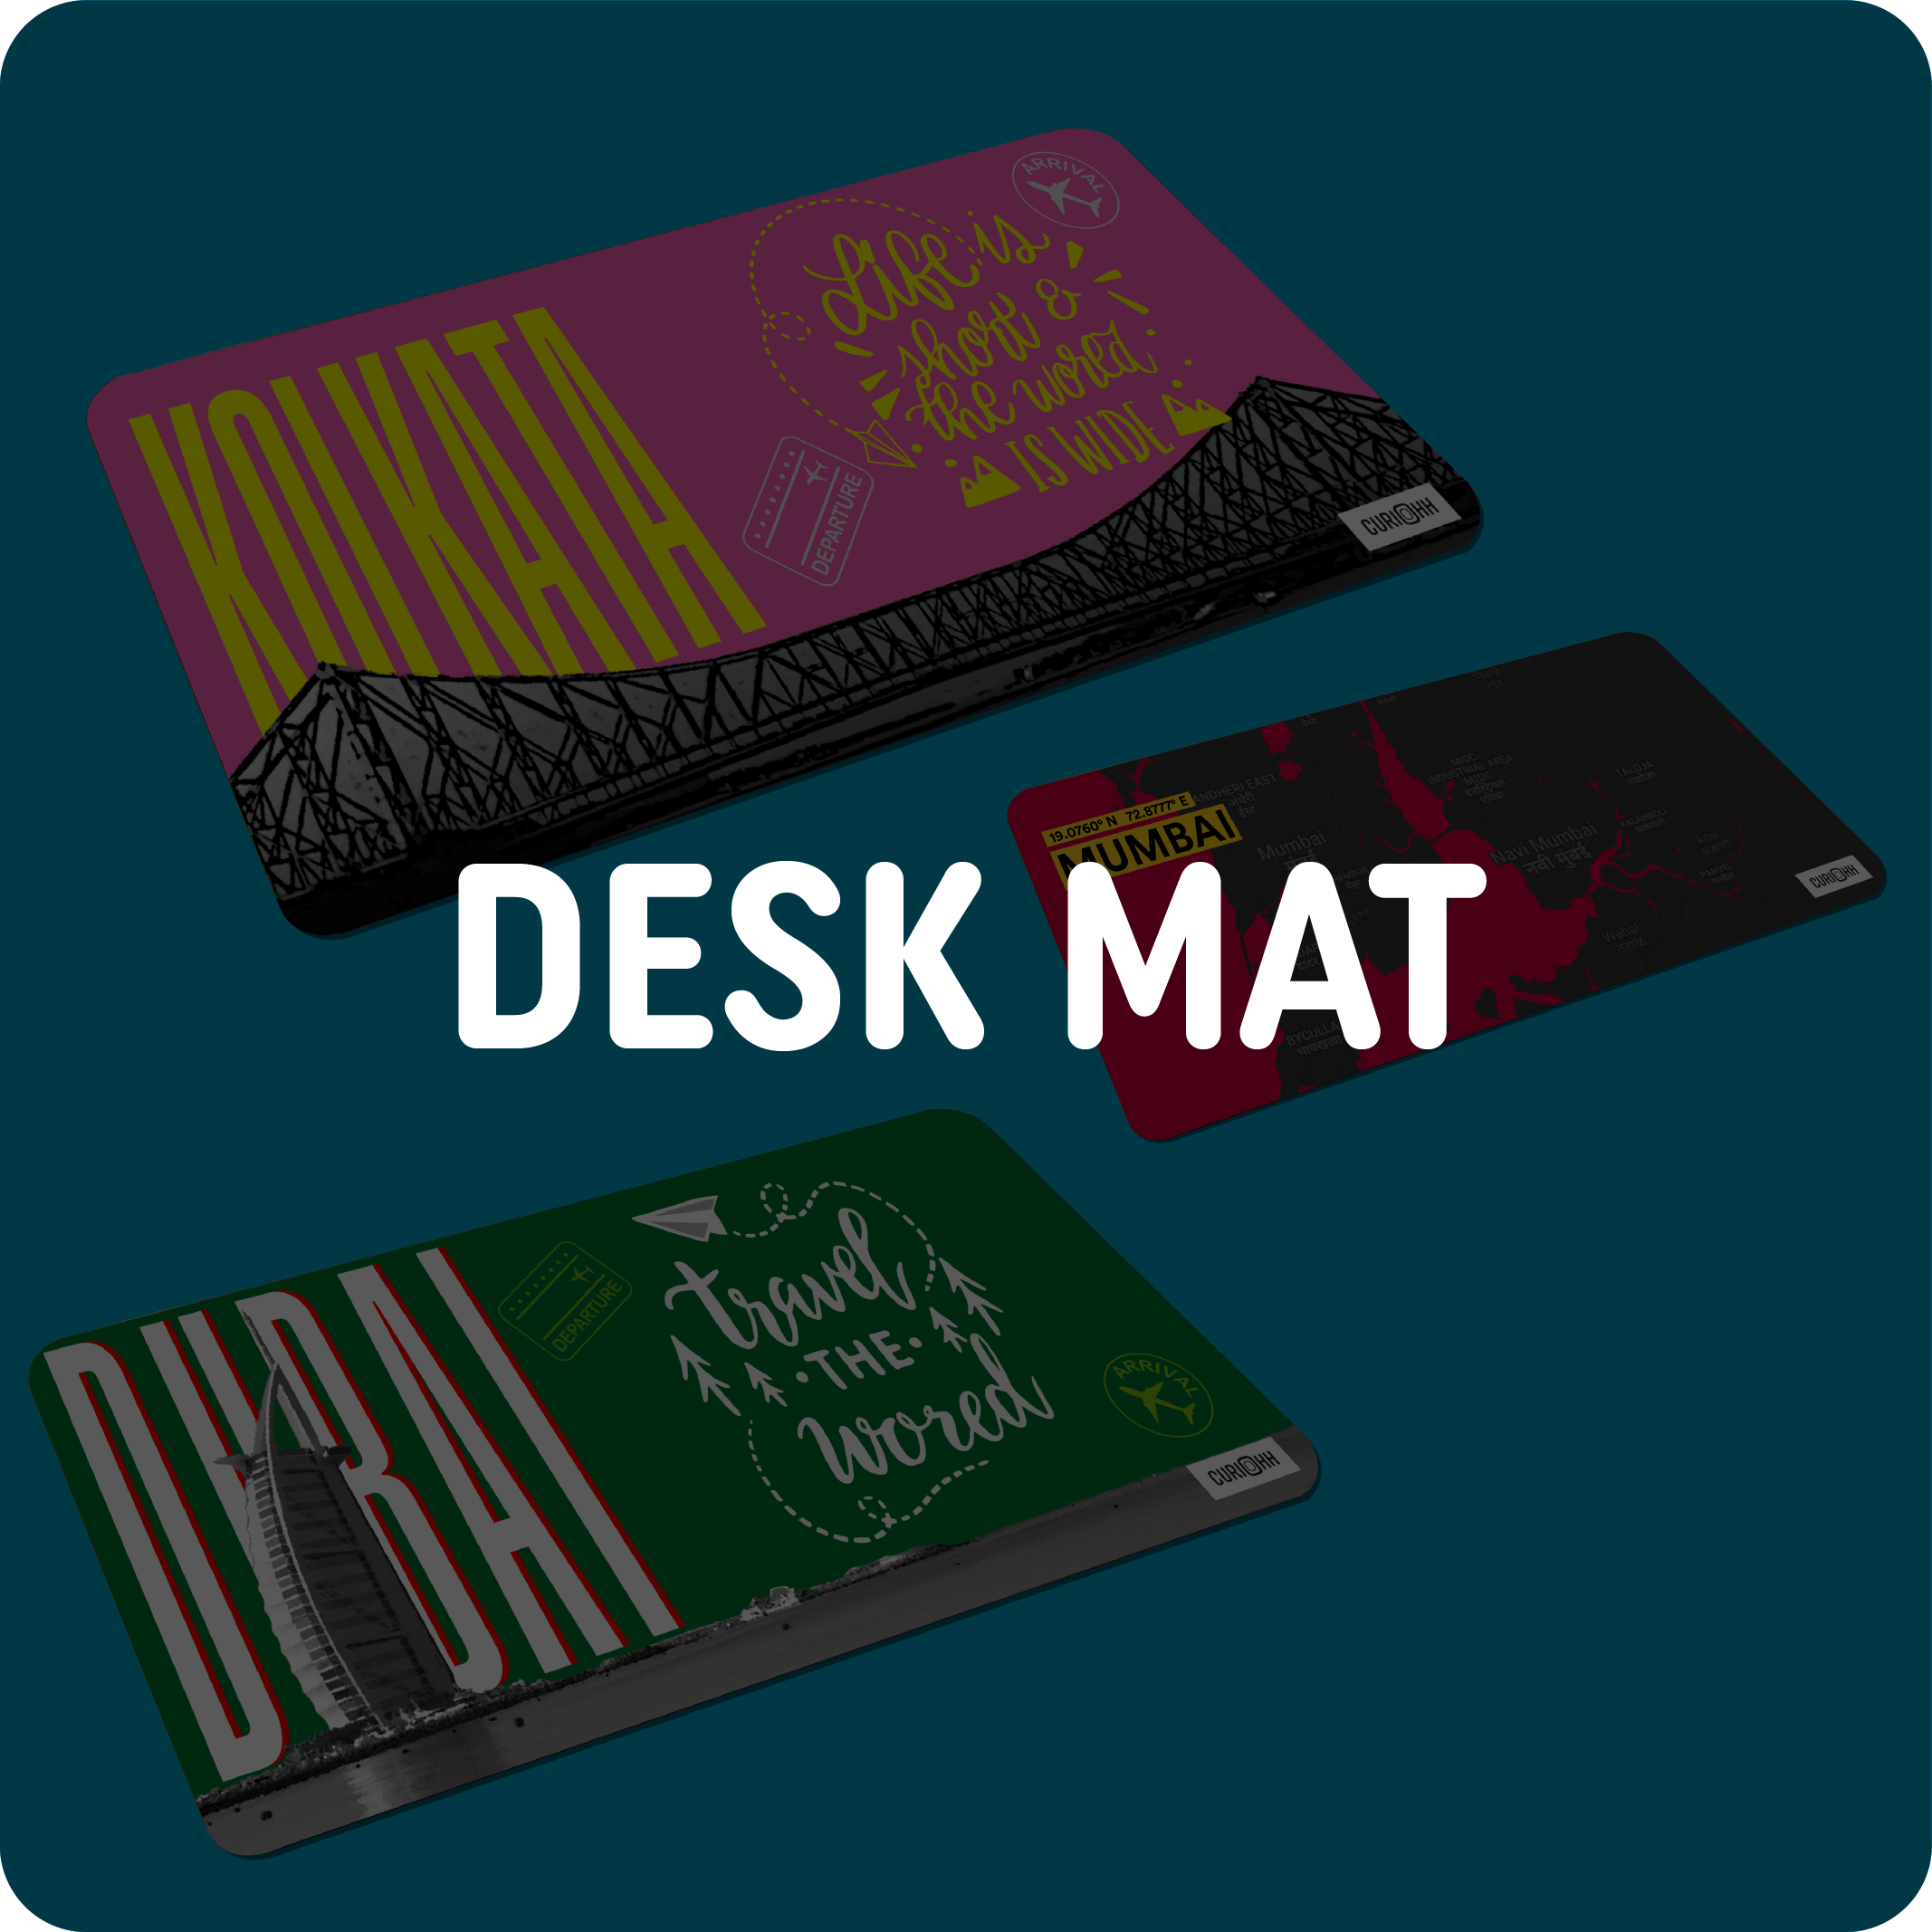 Desk Mats